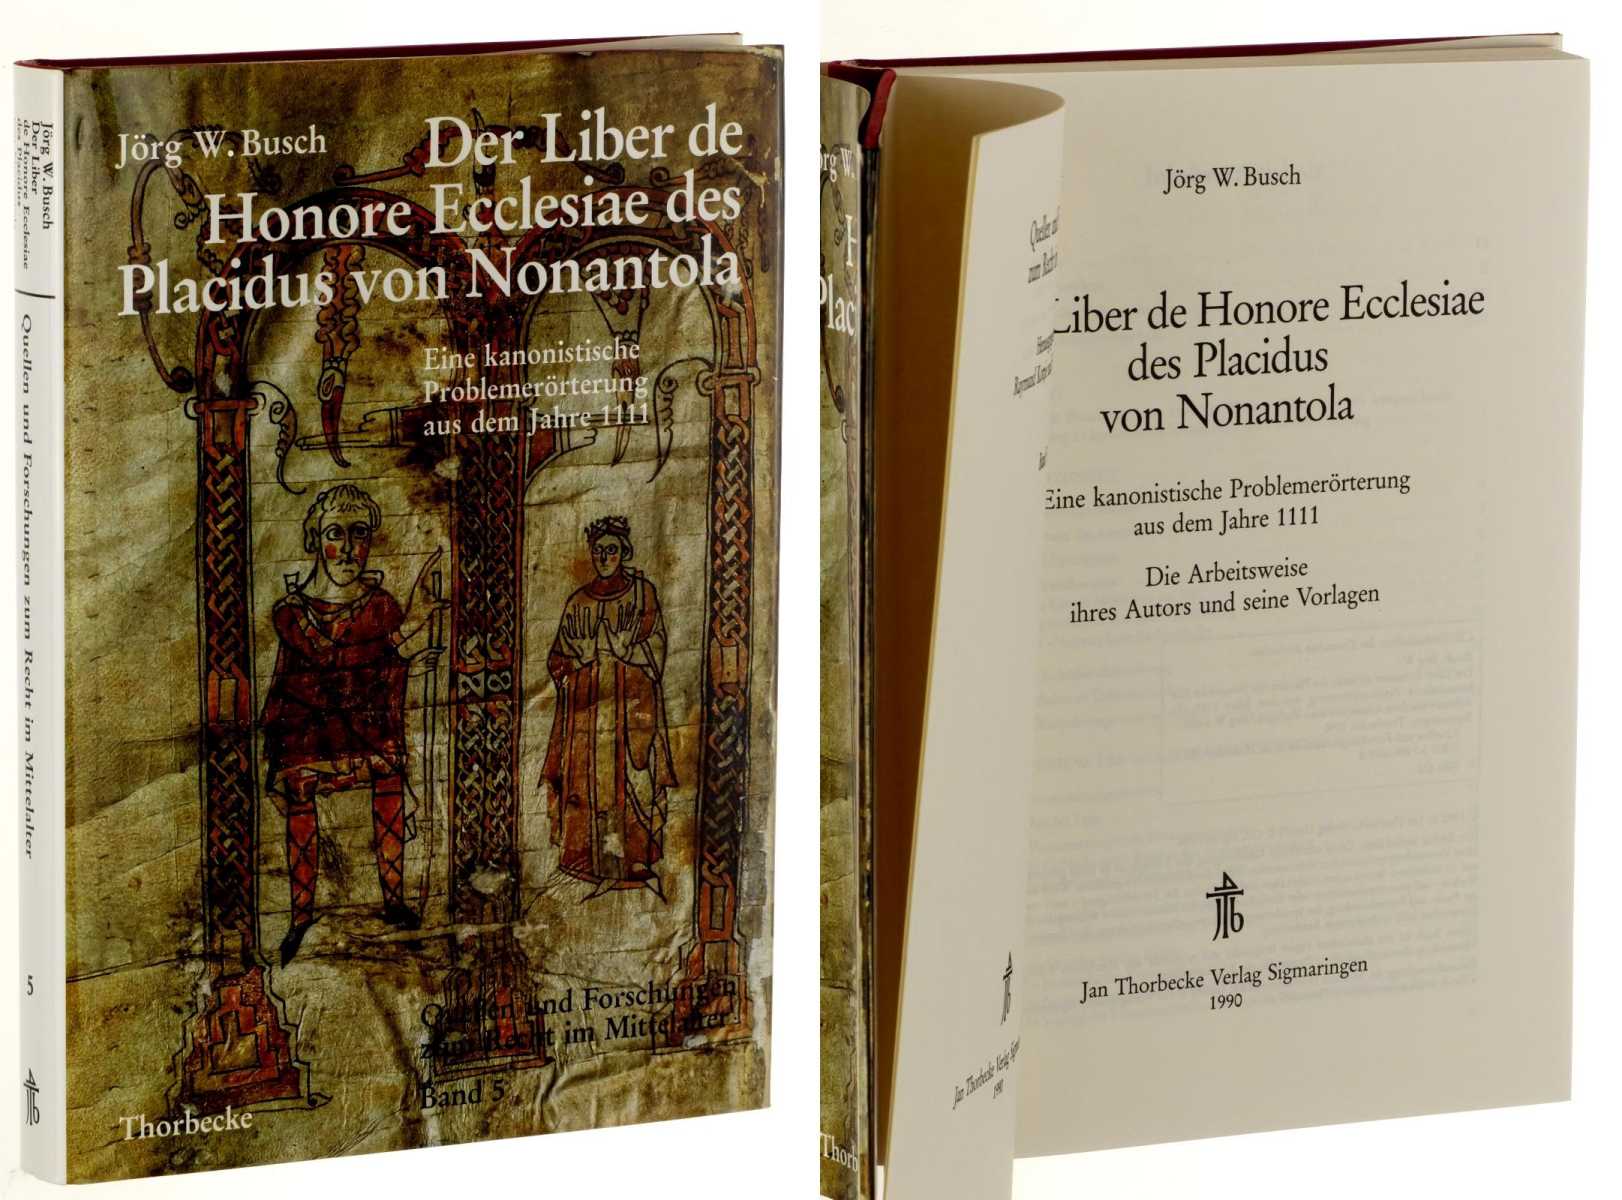 Busch, Jörg W.:  Der Liber de honore ecclesiae des Placidus von Nonantola. Eine kanonistische Problemerörterung aus dem Jahre 1111. Die Arbeitsweise ihres Autors und seine Vorlagen. 